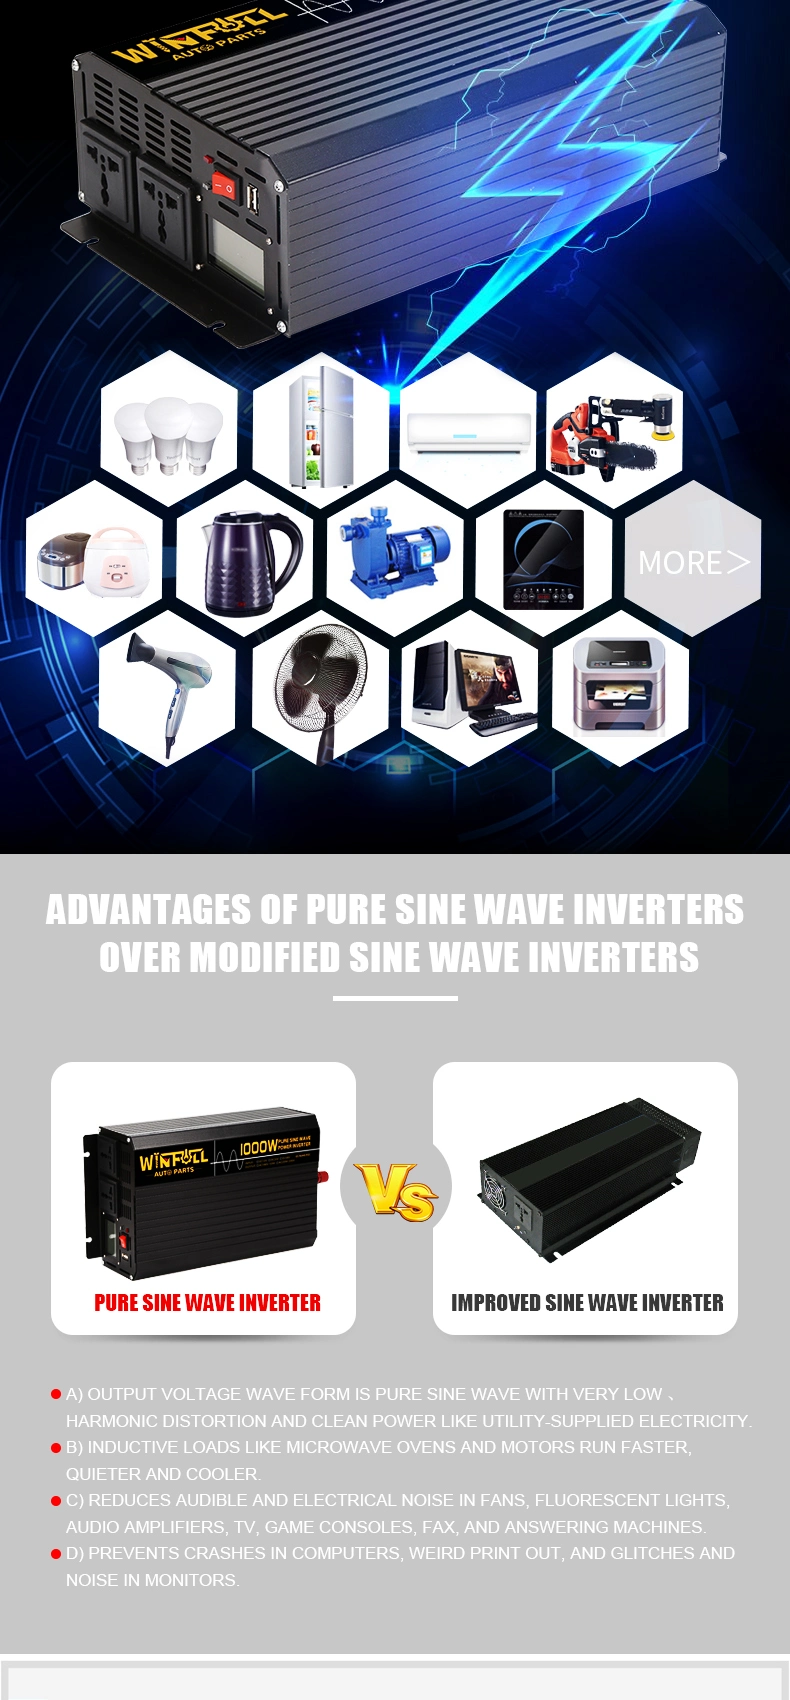 12V/24V DC to AC 110V/120V/220V/230V 1000W Sine Wave Power Inverter